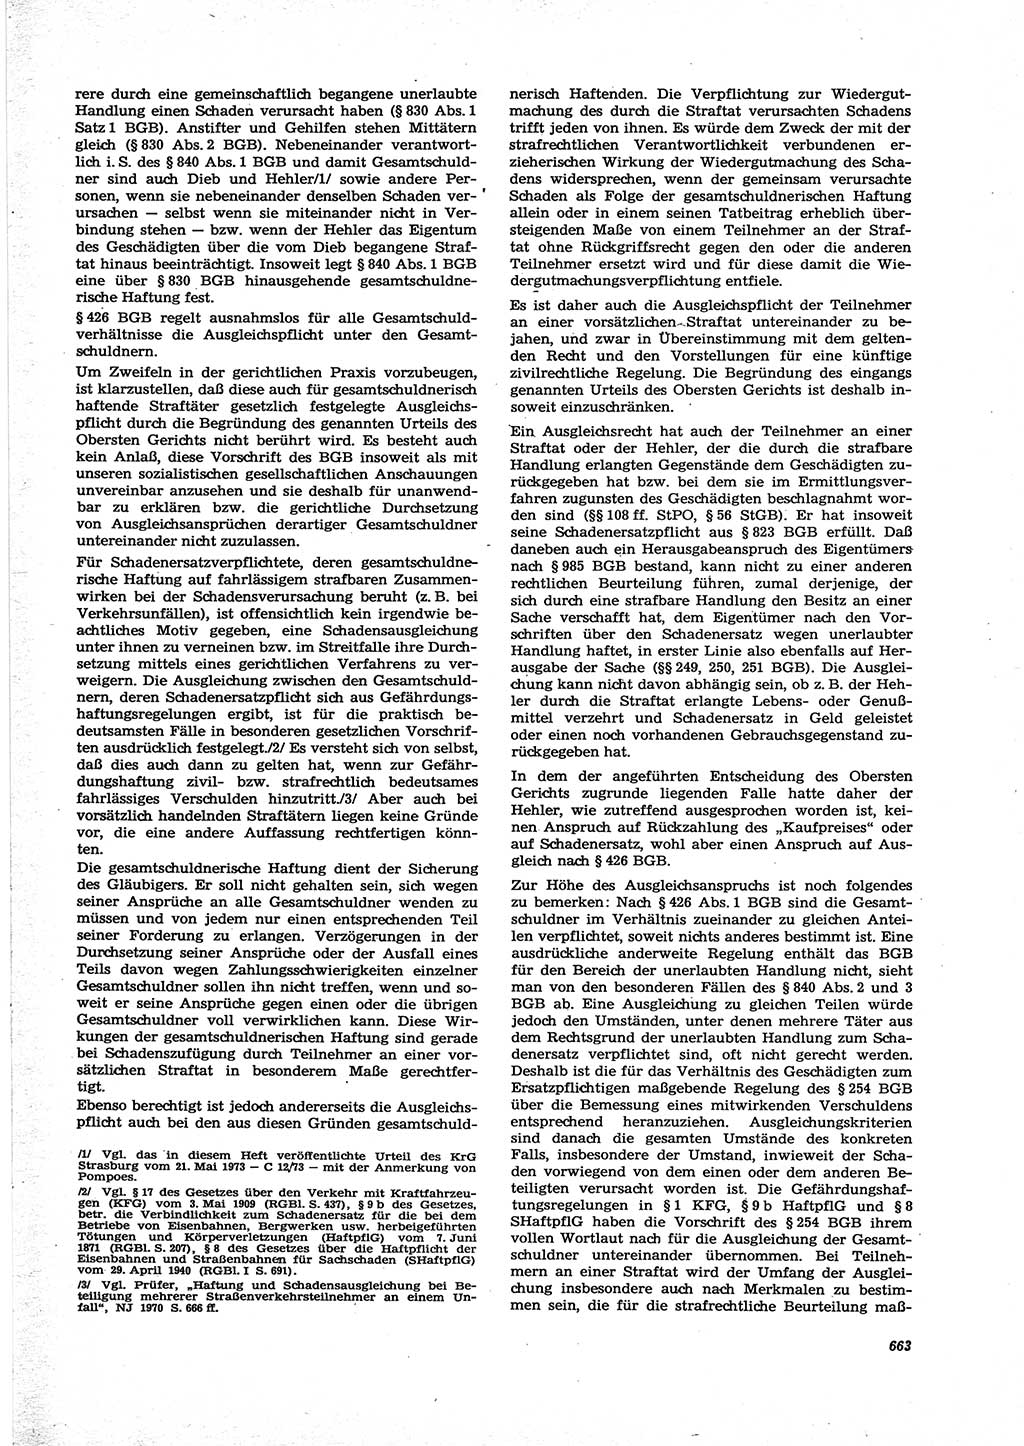 Neue Justiz (NJ), Zeitschrift für Recht und Rechtswissenschaft [Deutsche Demokratische Republik (DDR)], 27. Jahrgang 1973, Seite 663 (NJ DDR 1973, S. 663)